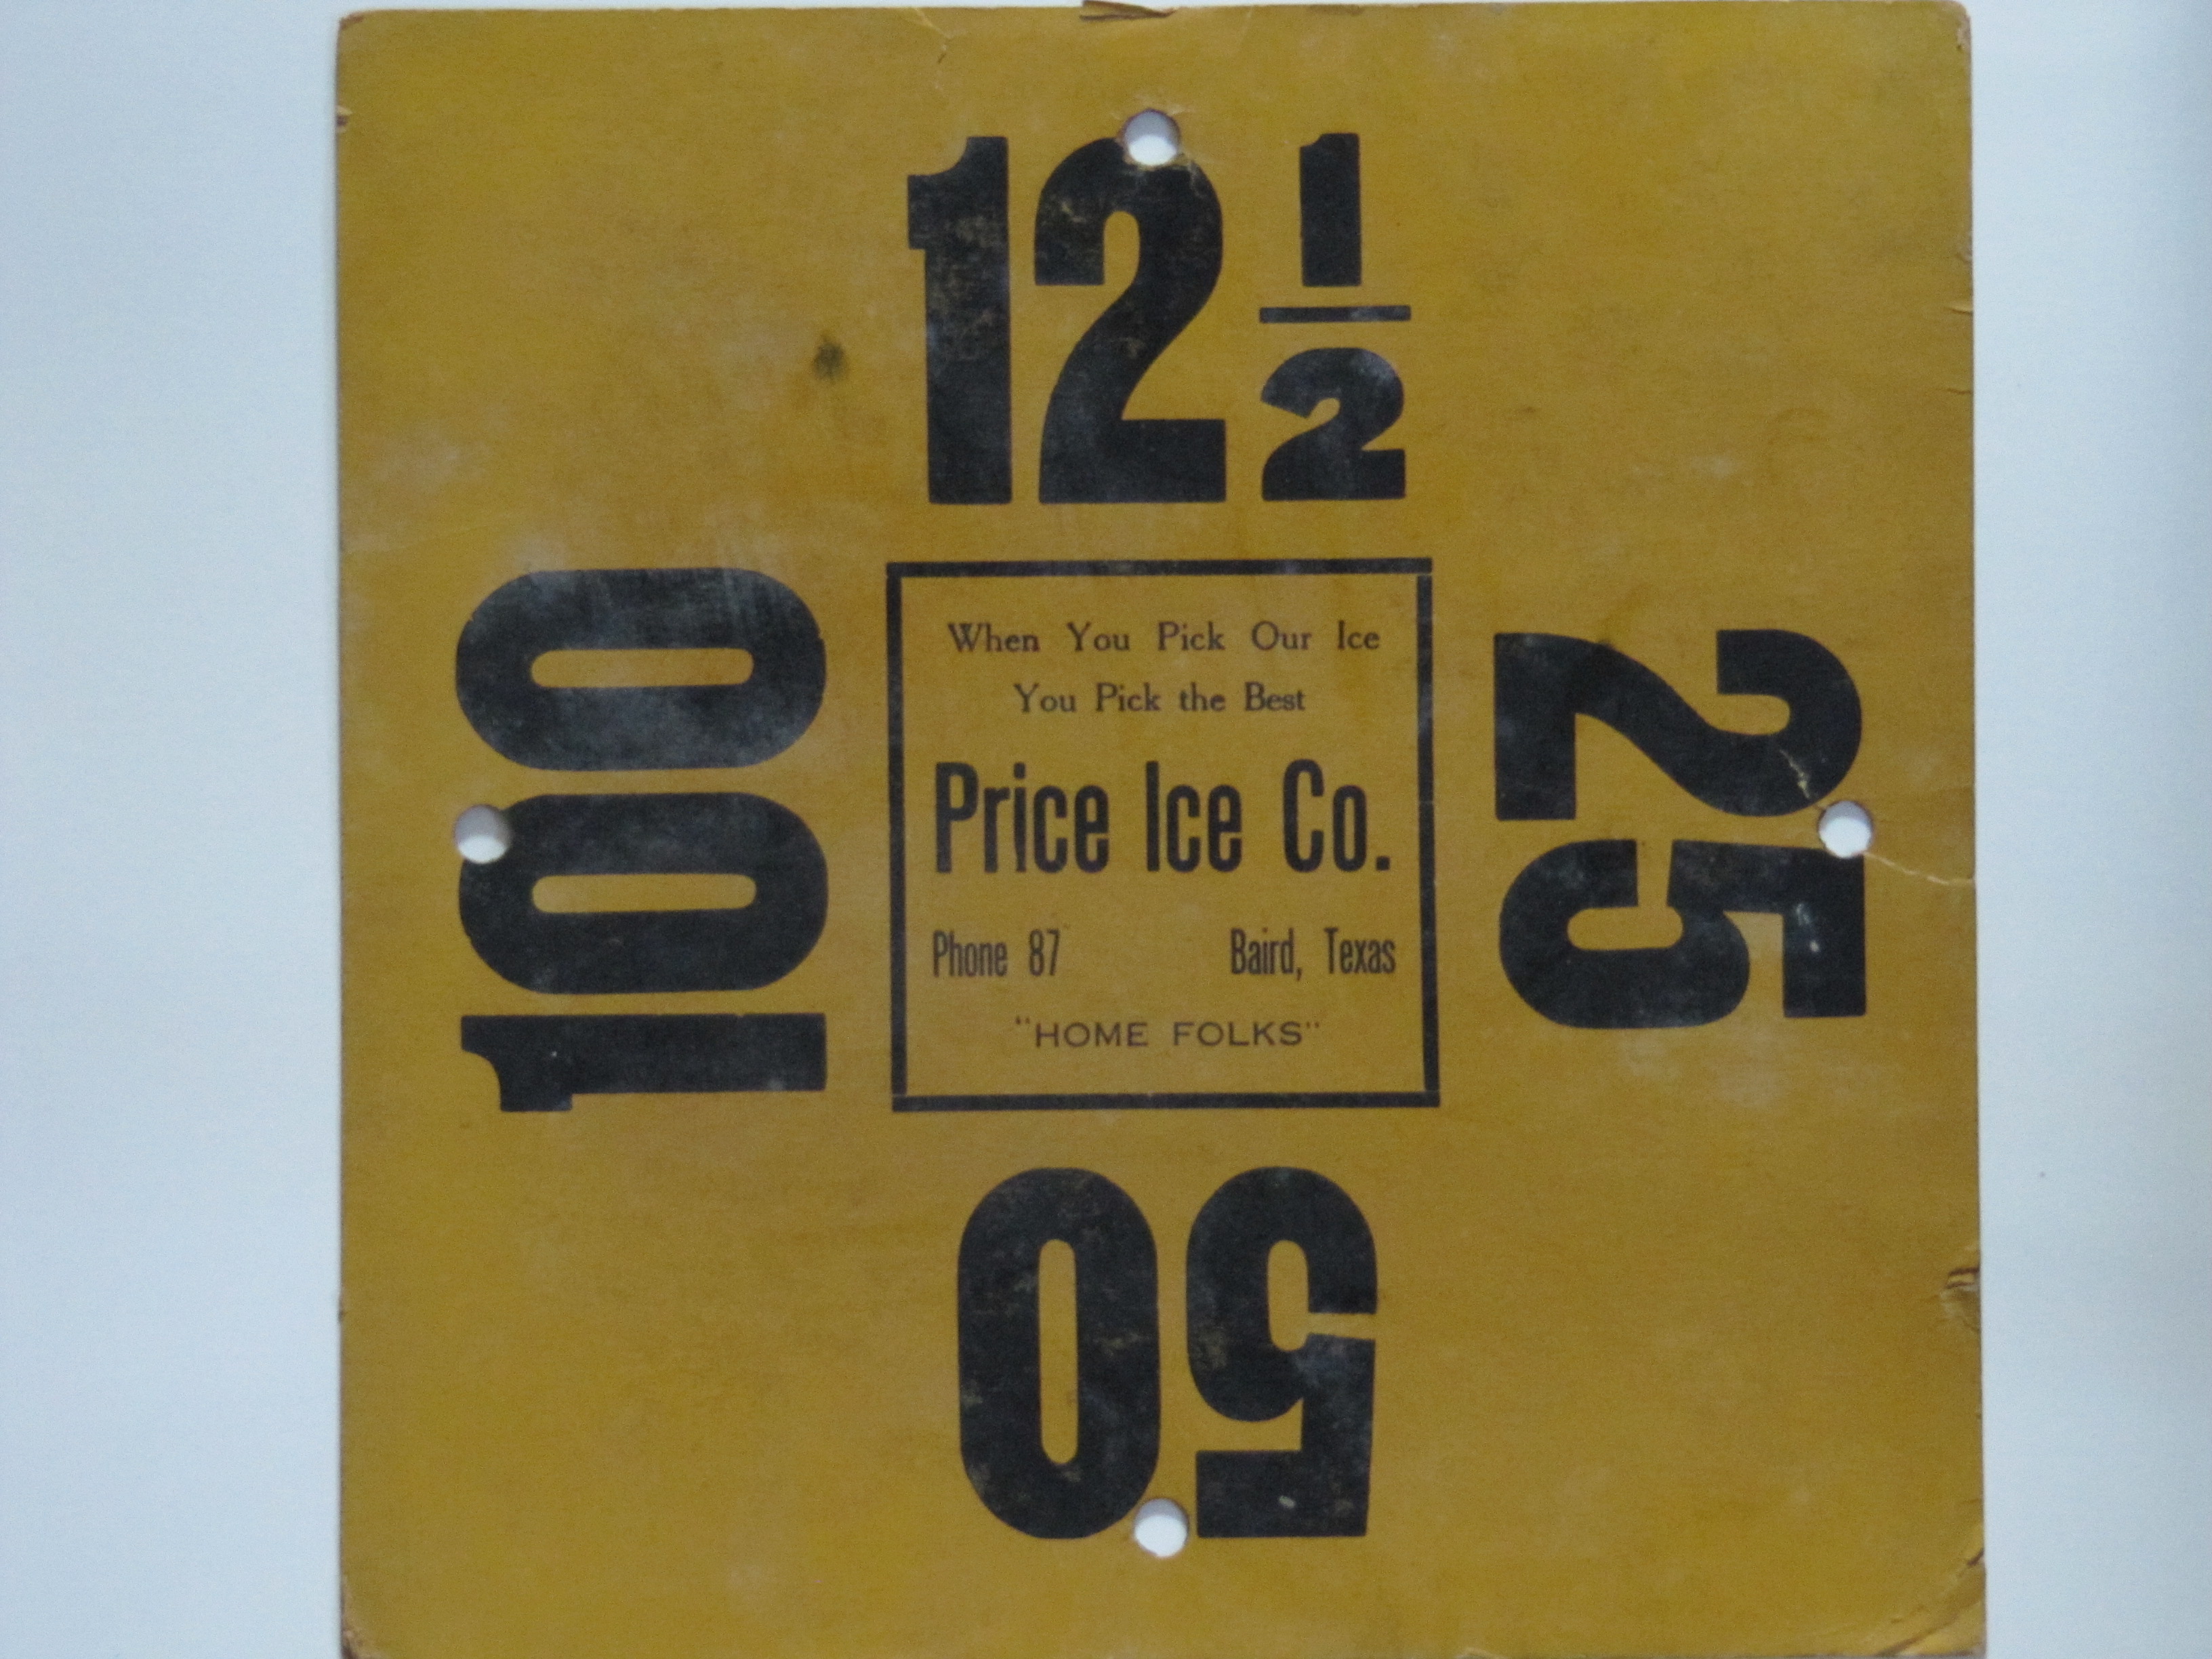 Price Ice Co.